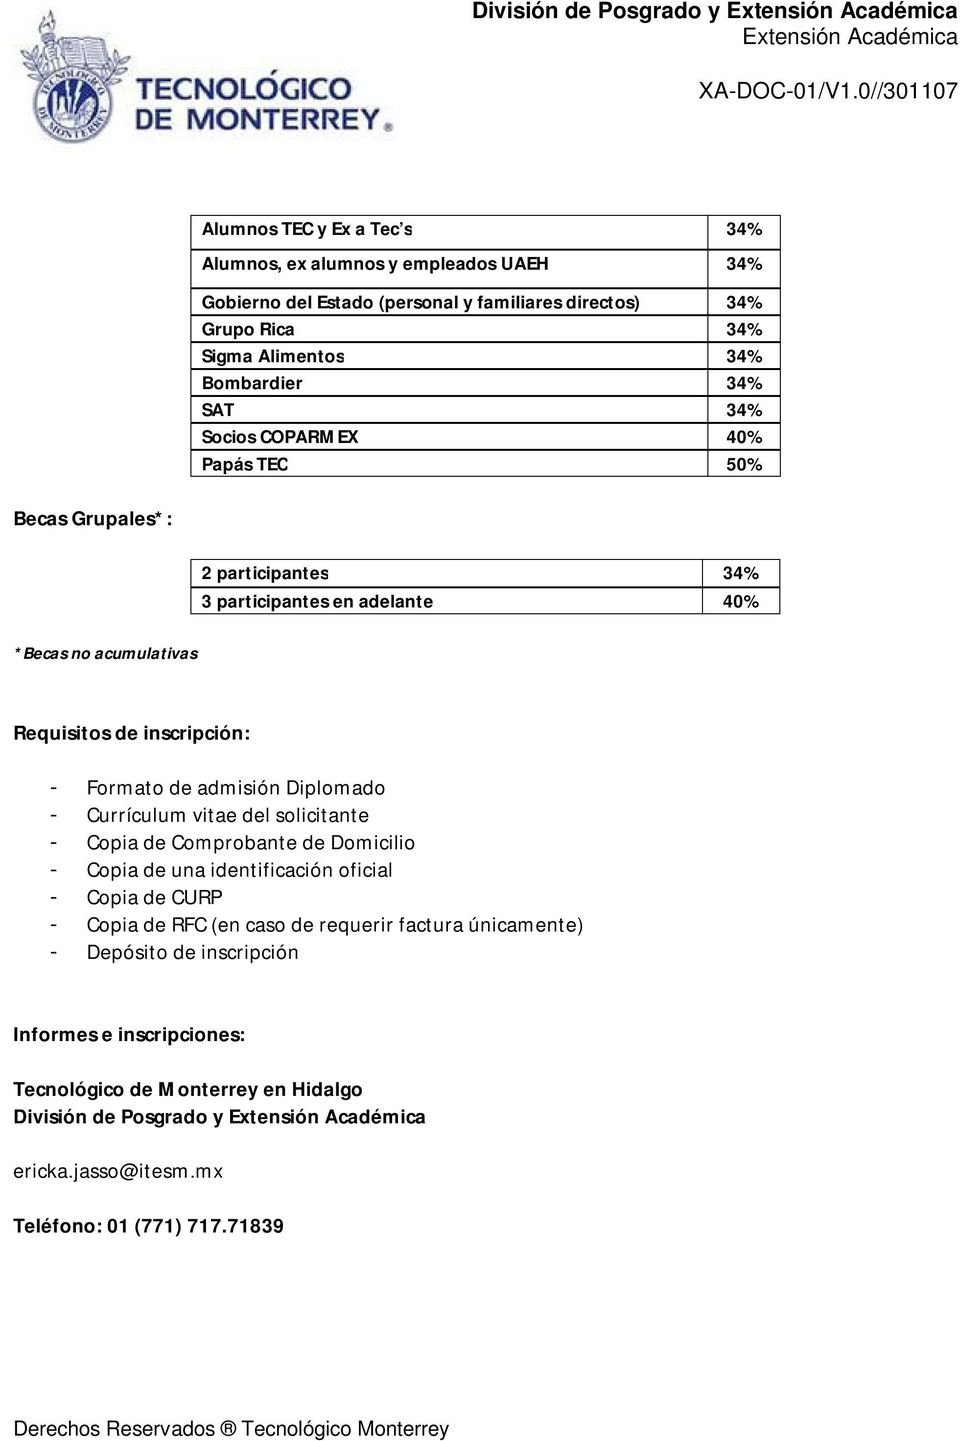 Formato de admisión Diplomado - Currículum vitae del solicitante - Copia de Comprobante de Domicilio - Copia de una identificación oficial - Copia de CURP - Copia de RFC (en caso de